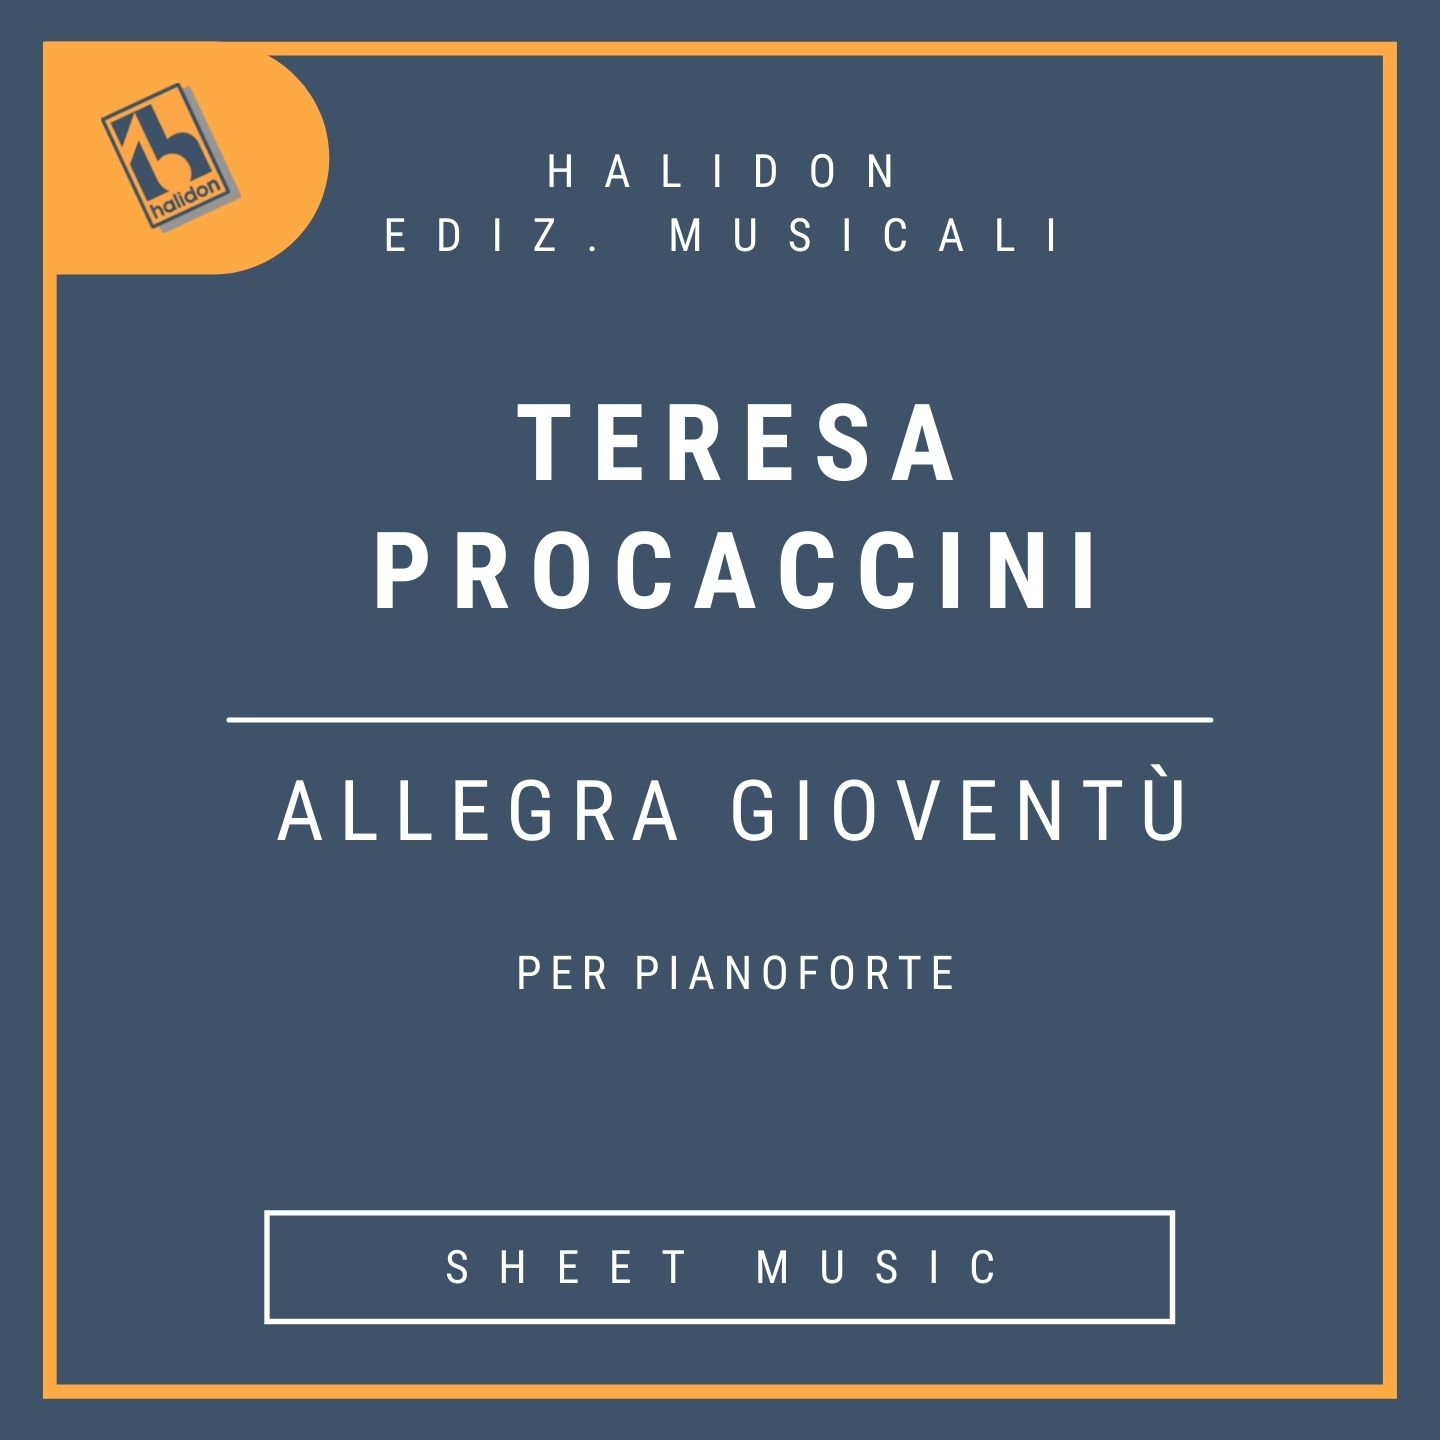 Teresa Procaccini - Allegra gioventù